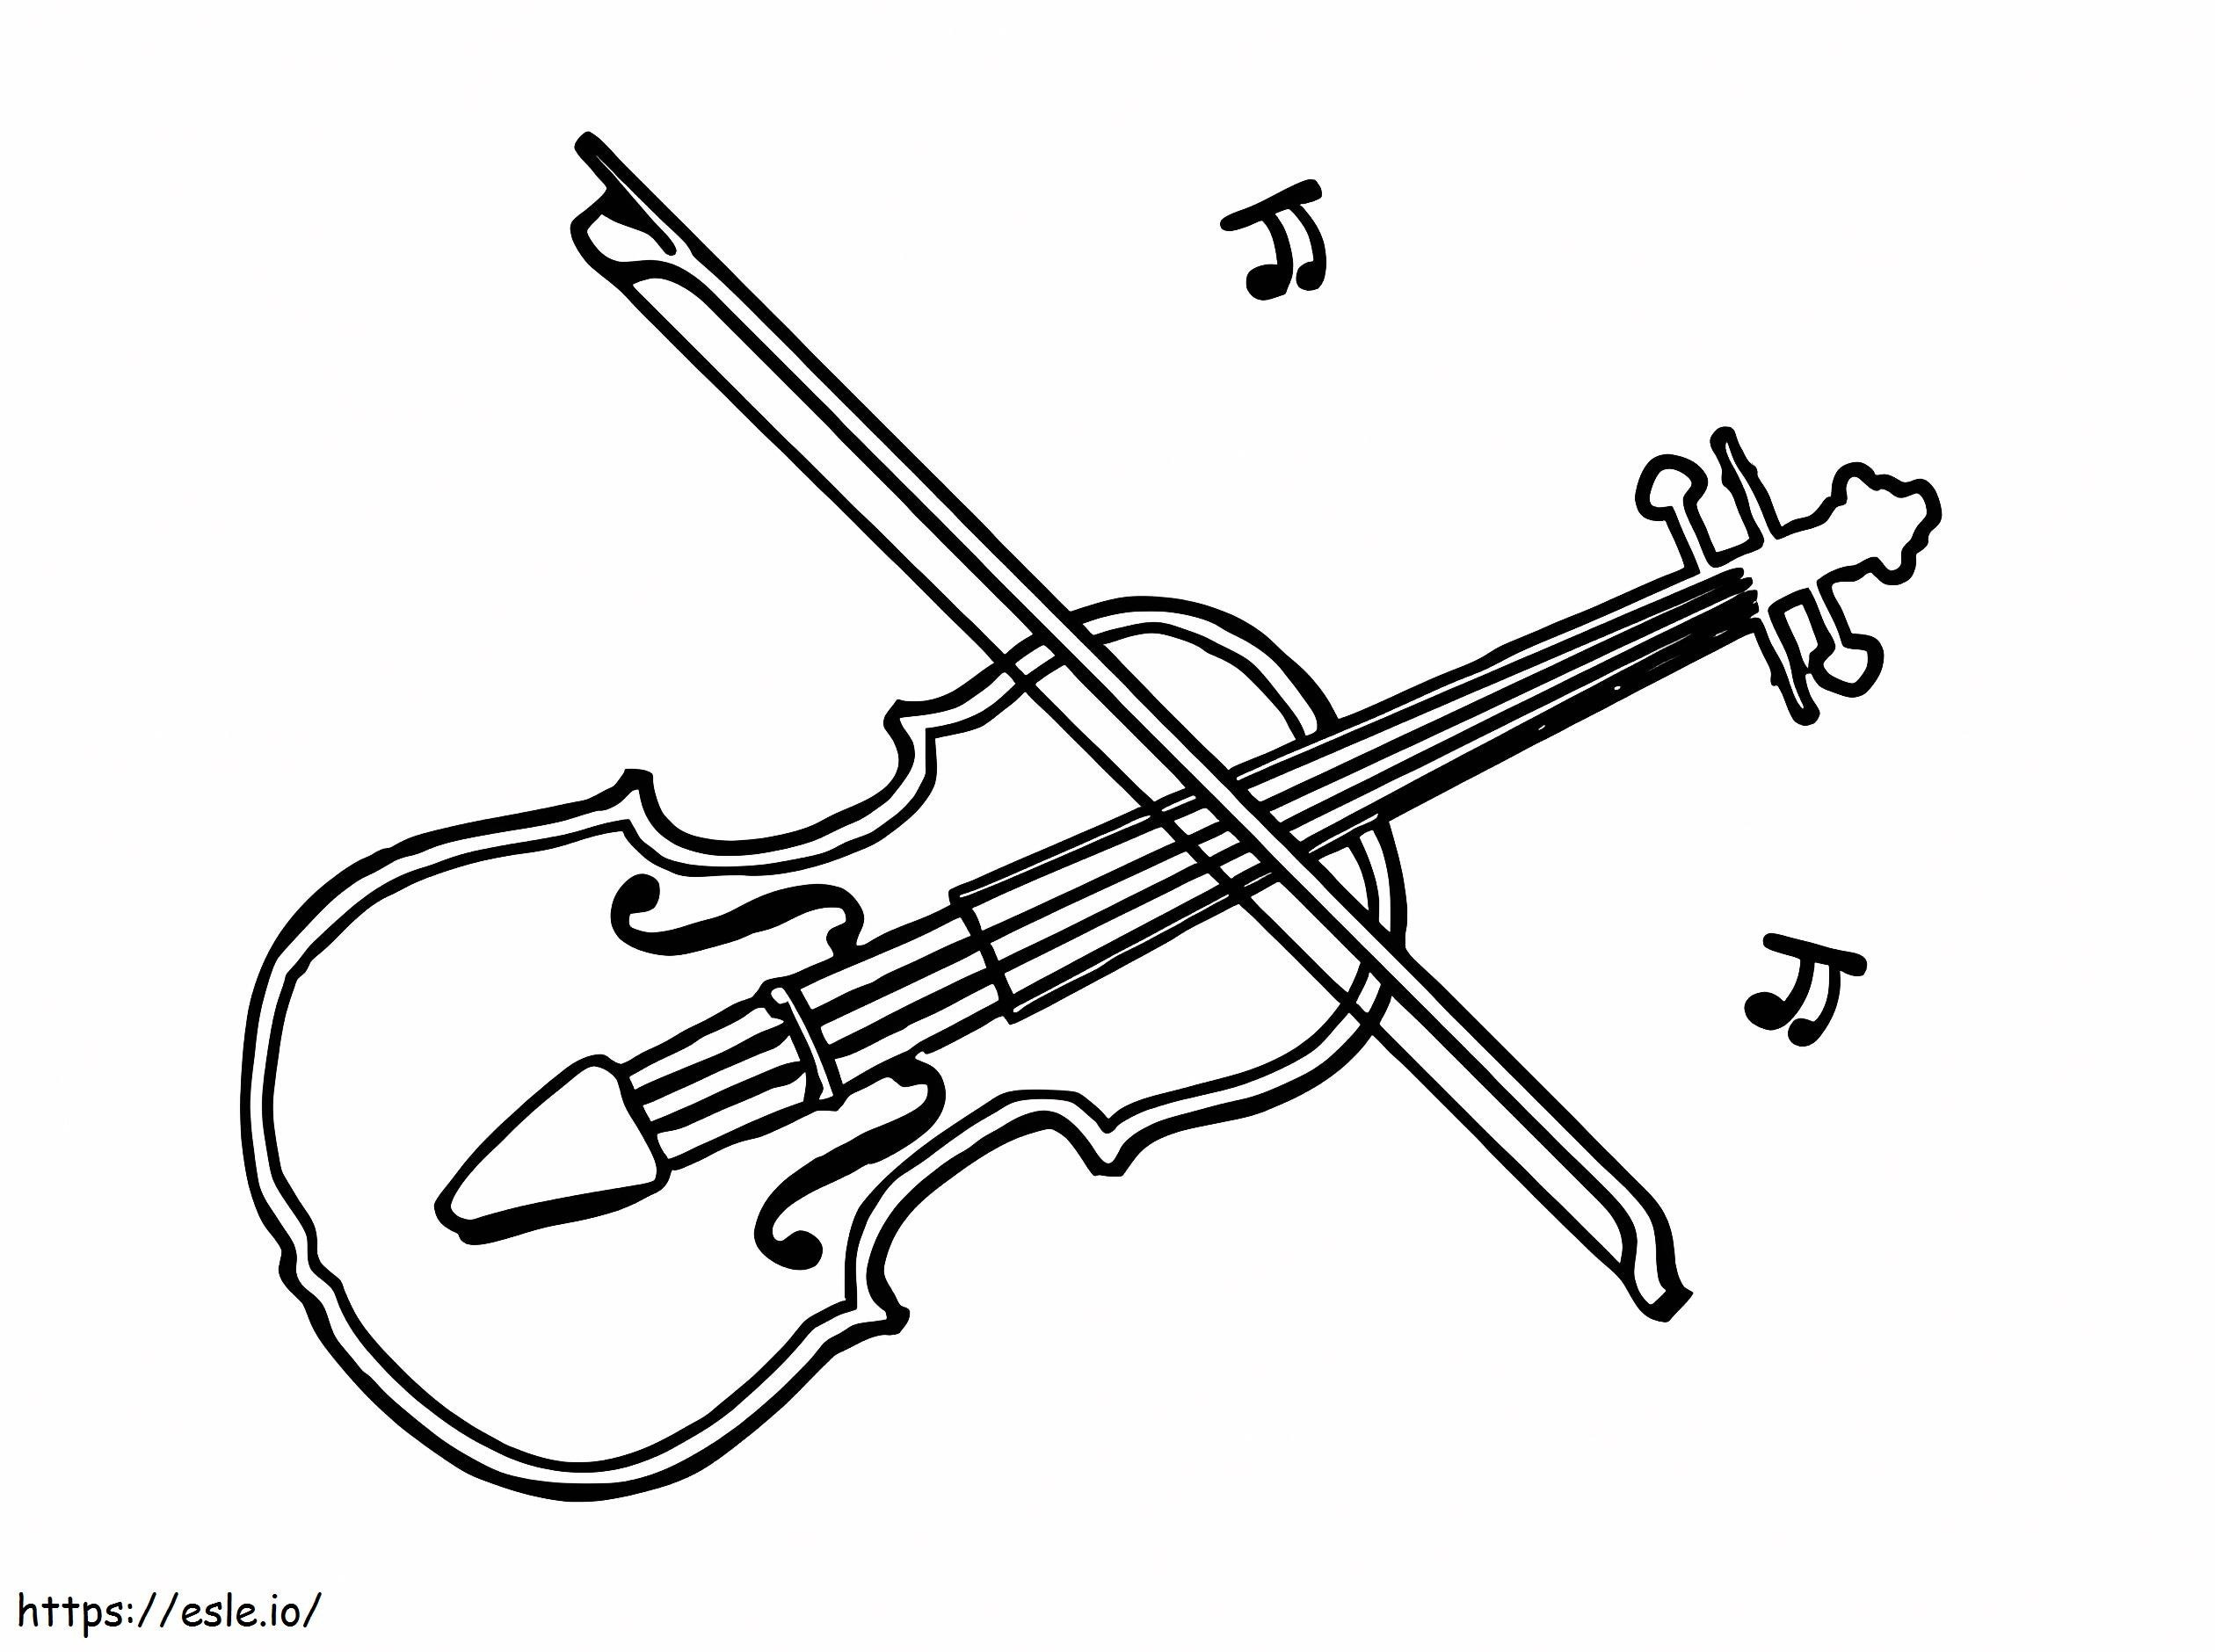 Disegno del violino da colorare